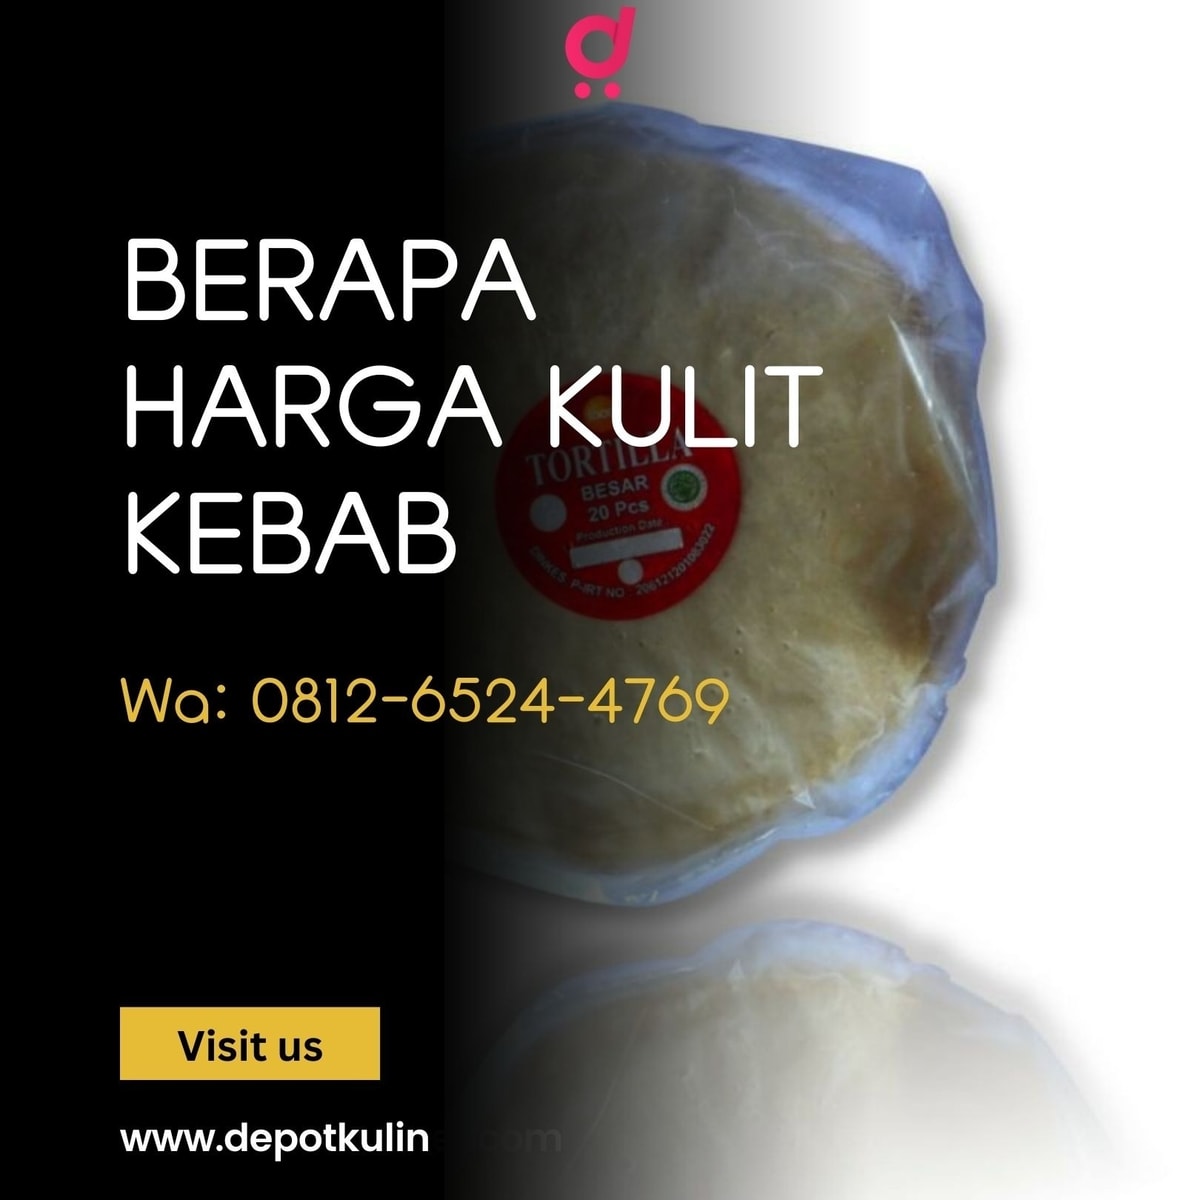 HARGA RESELLER, Call 0812-6524-4769, Berapa Harga Kulit Kebab